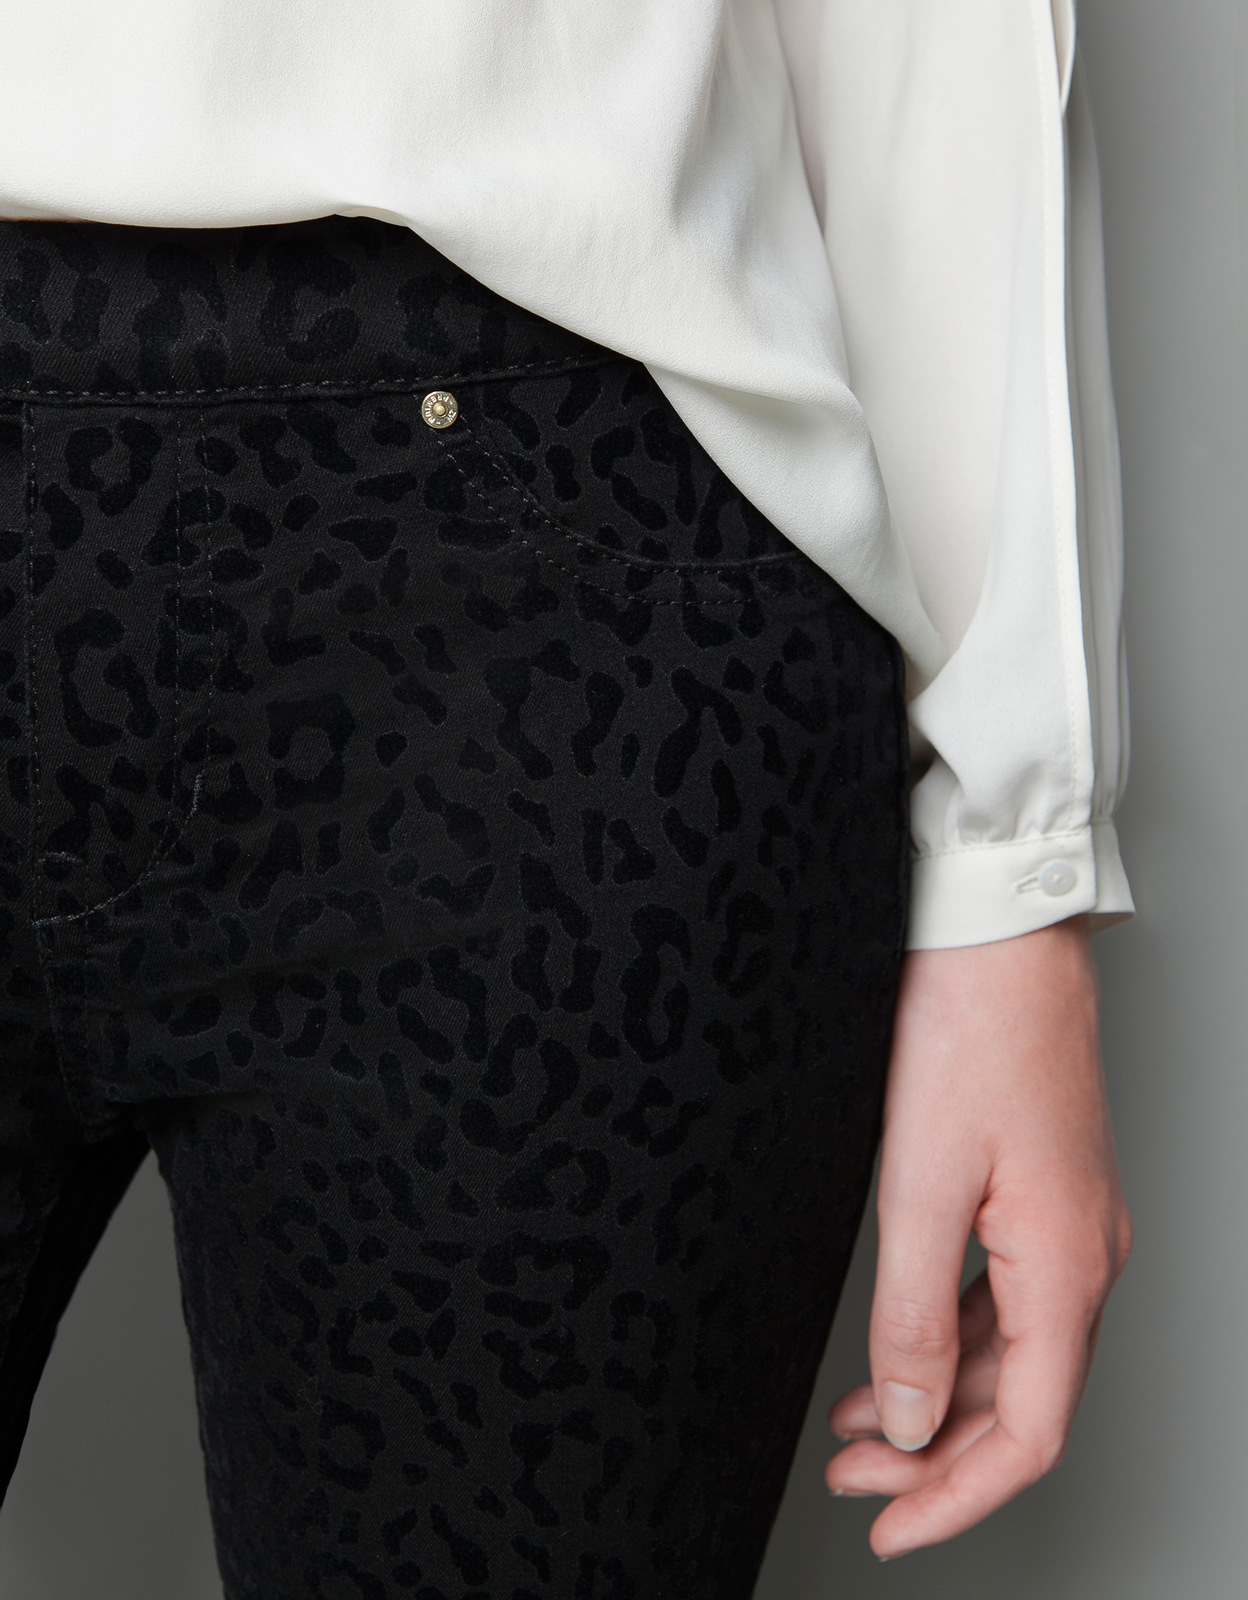 Zara párducmintás fekete leggings 2012.10.21 fotója